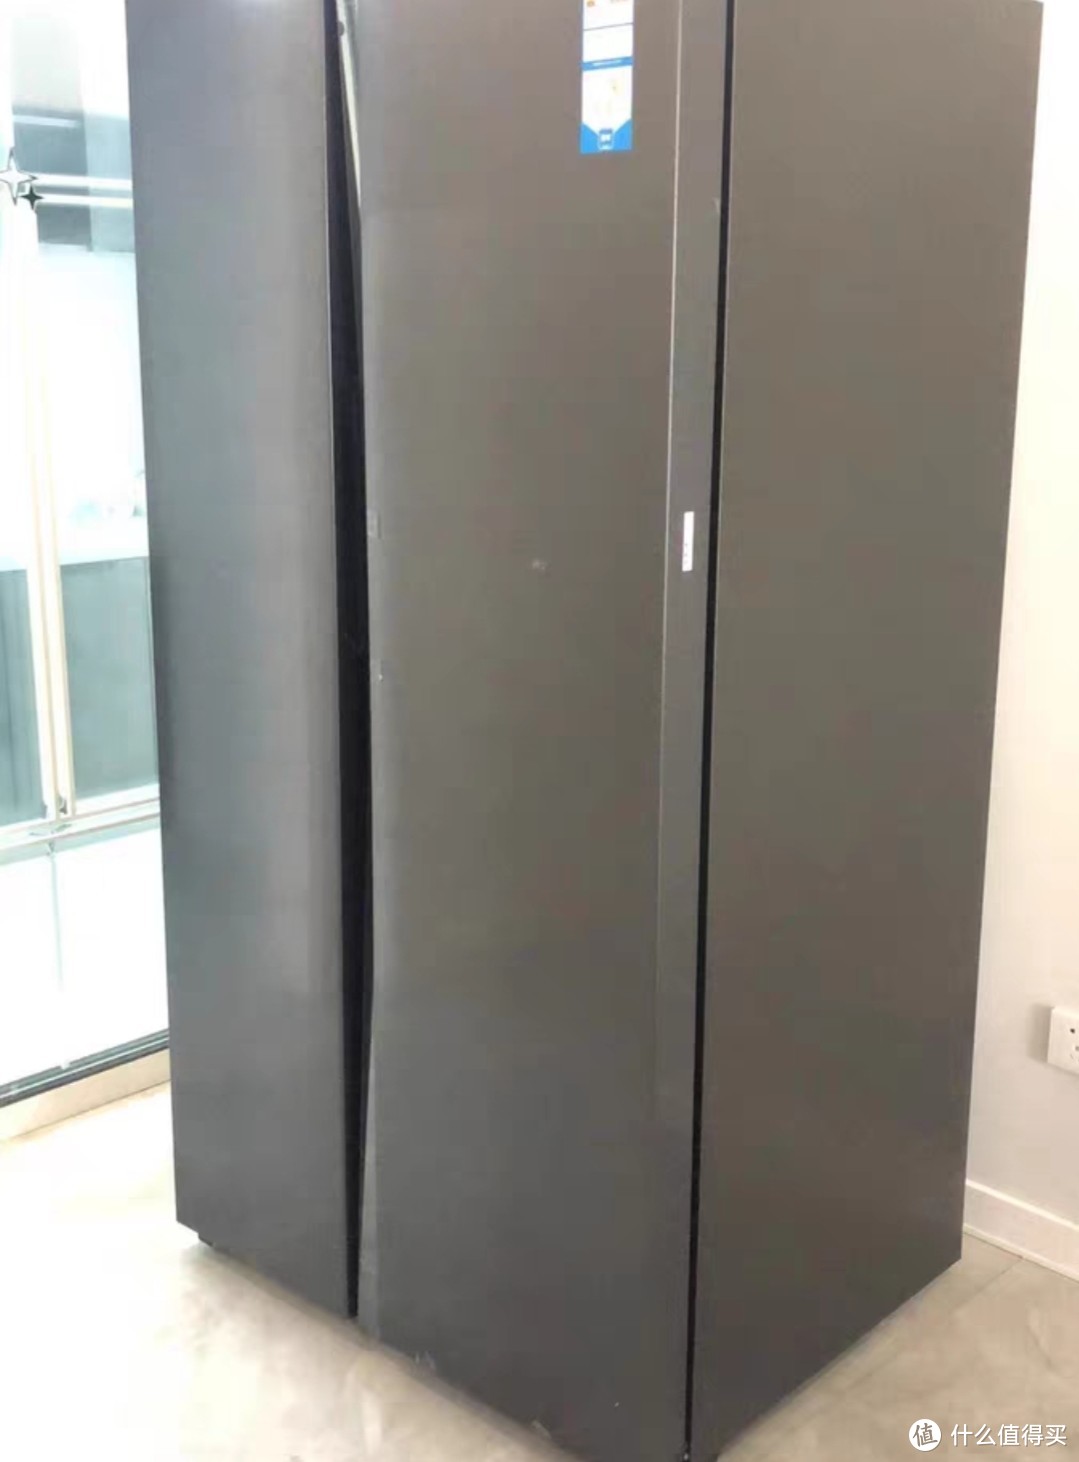 海尔651L双开对开门大容量冰箱风冷无霜一级能效家用智能电冰箱，是一款特别性价比高的电冰箱